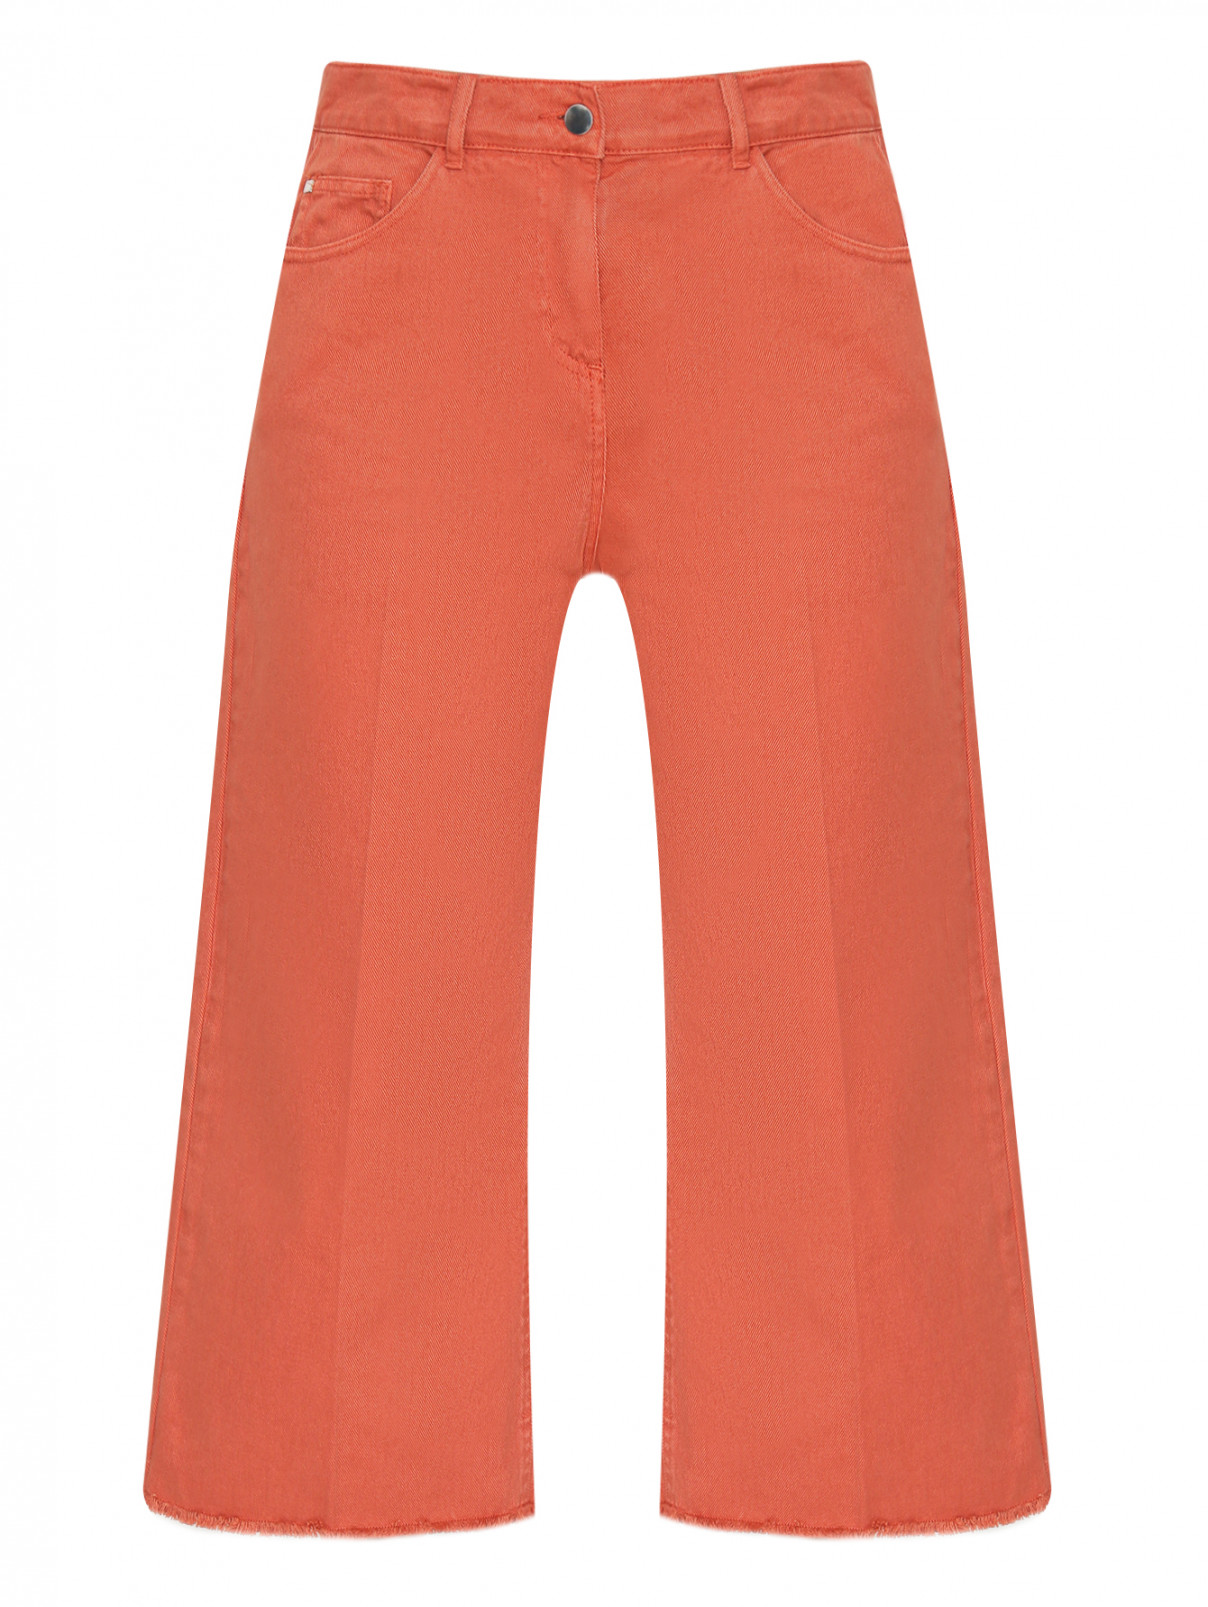 Укороченные джинсы с бахромой Persona by Marina Rinaldi  –  Общий вид  – Цвет:  Оранжевый